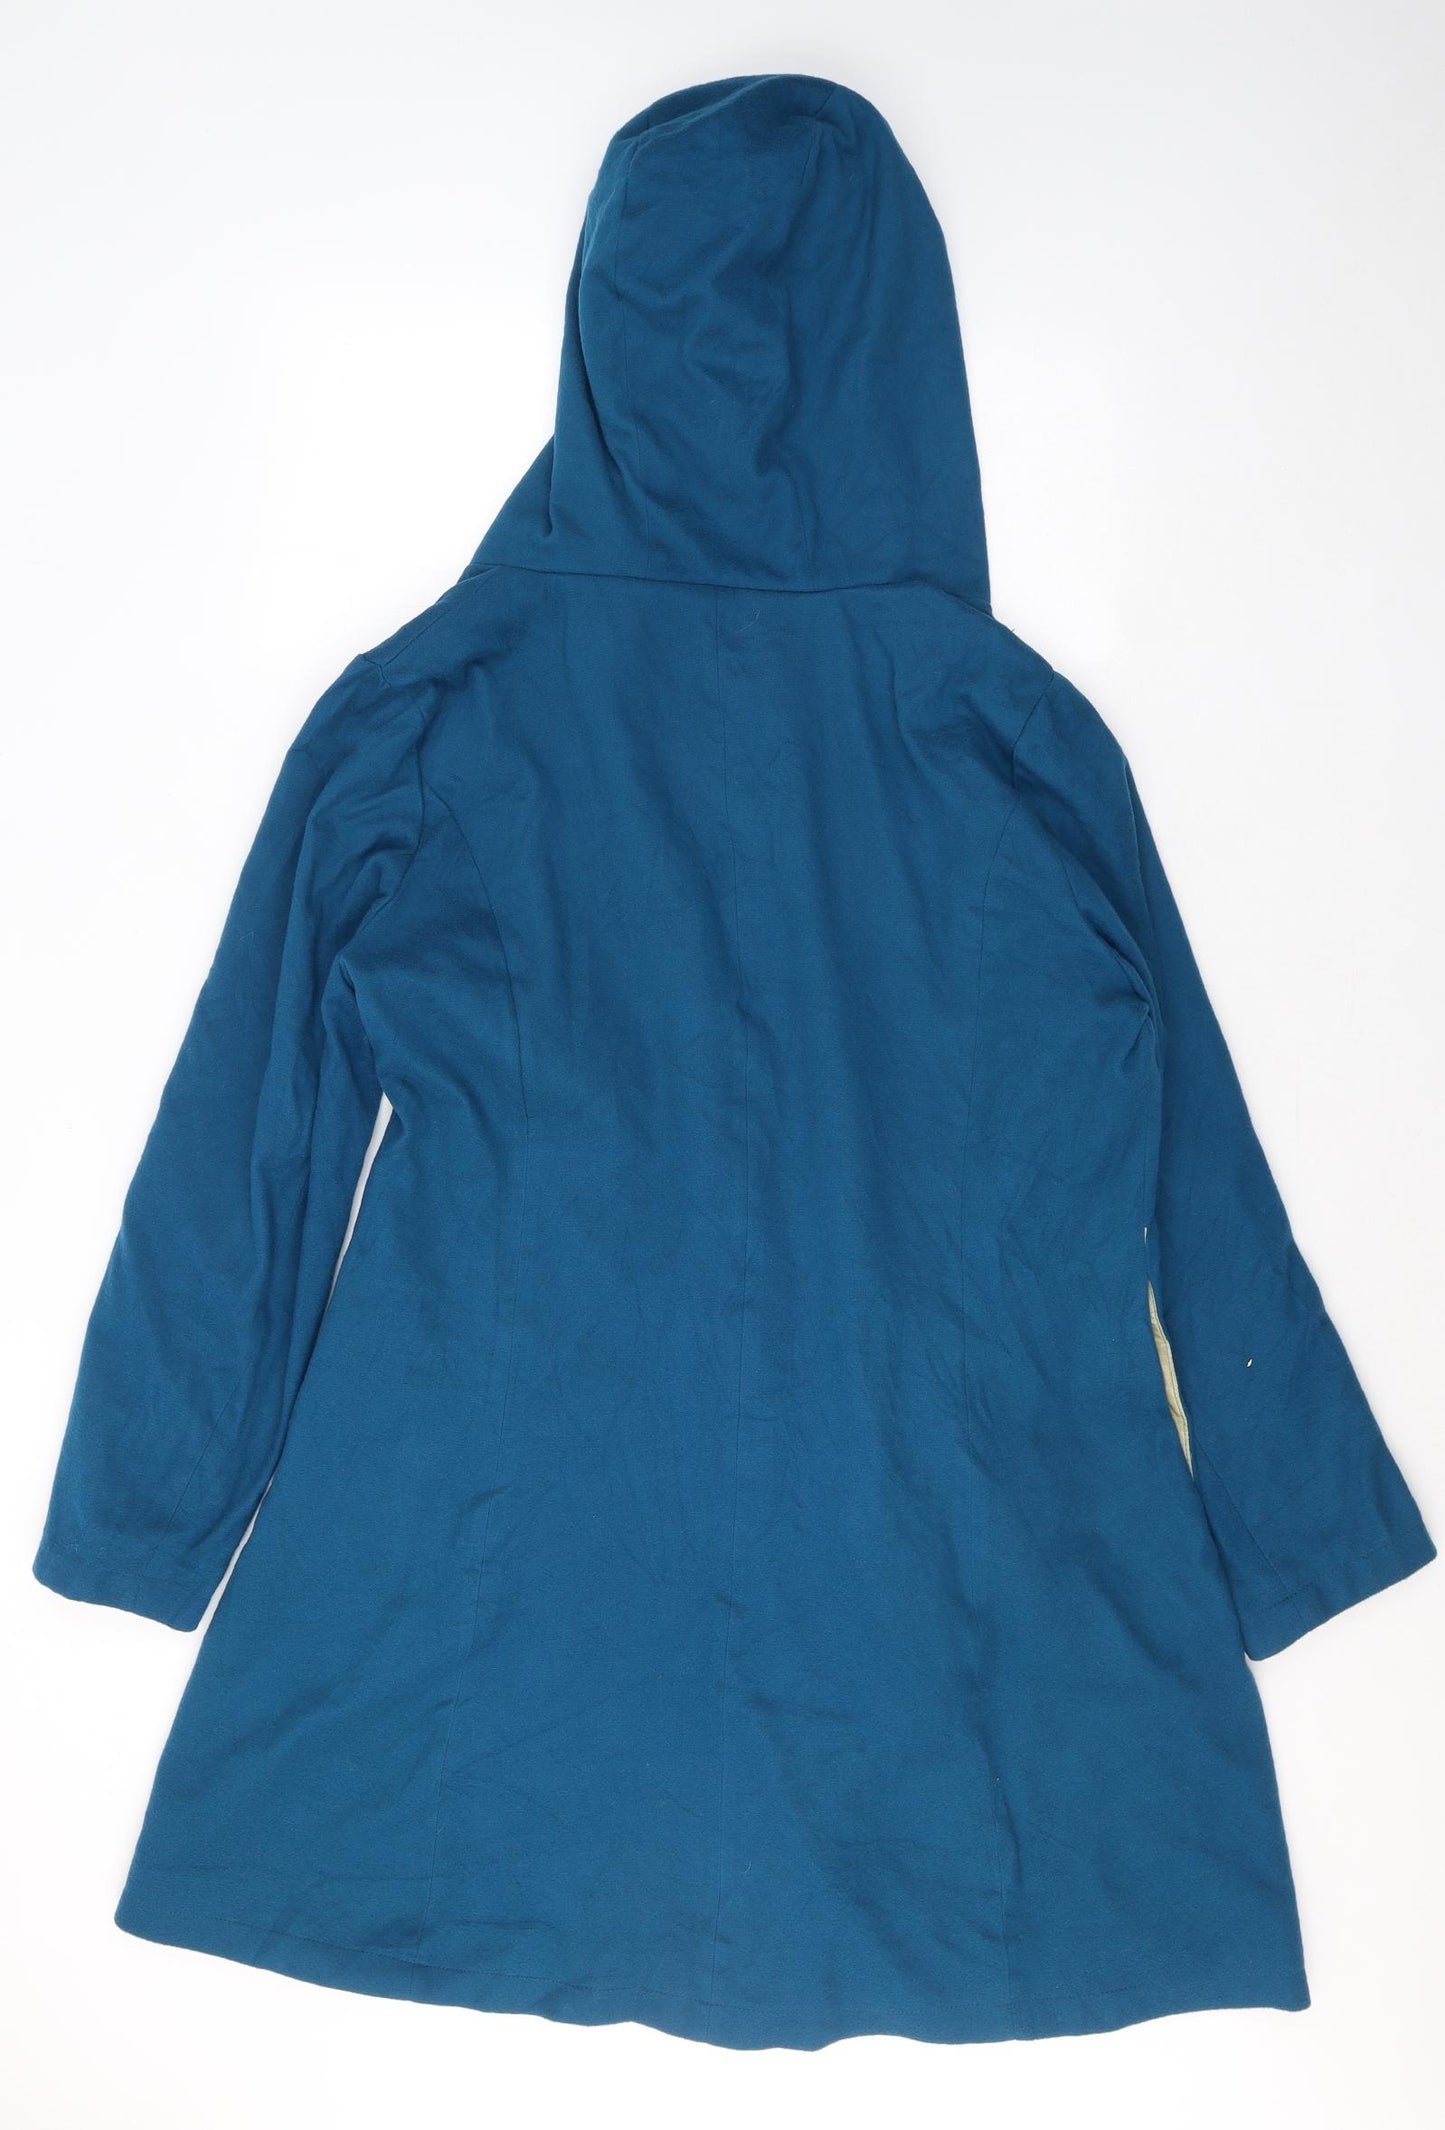 MissLook Womens Blue   Pea Coat Coat Size 2XL  Button